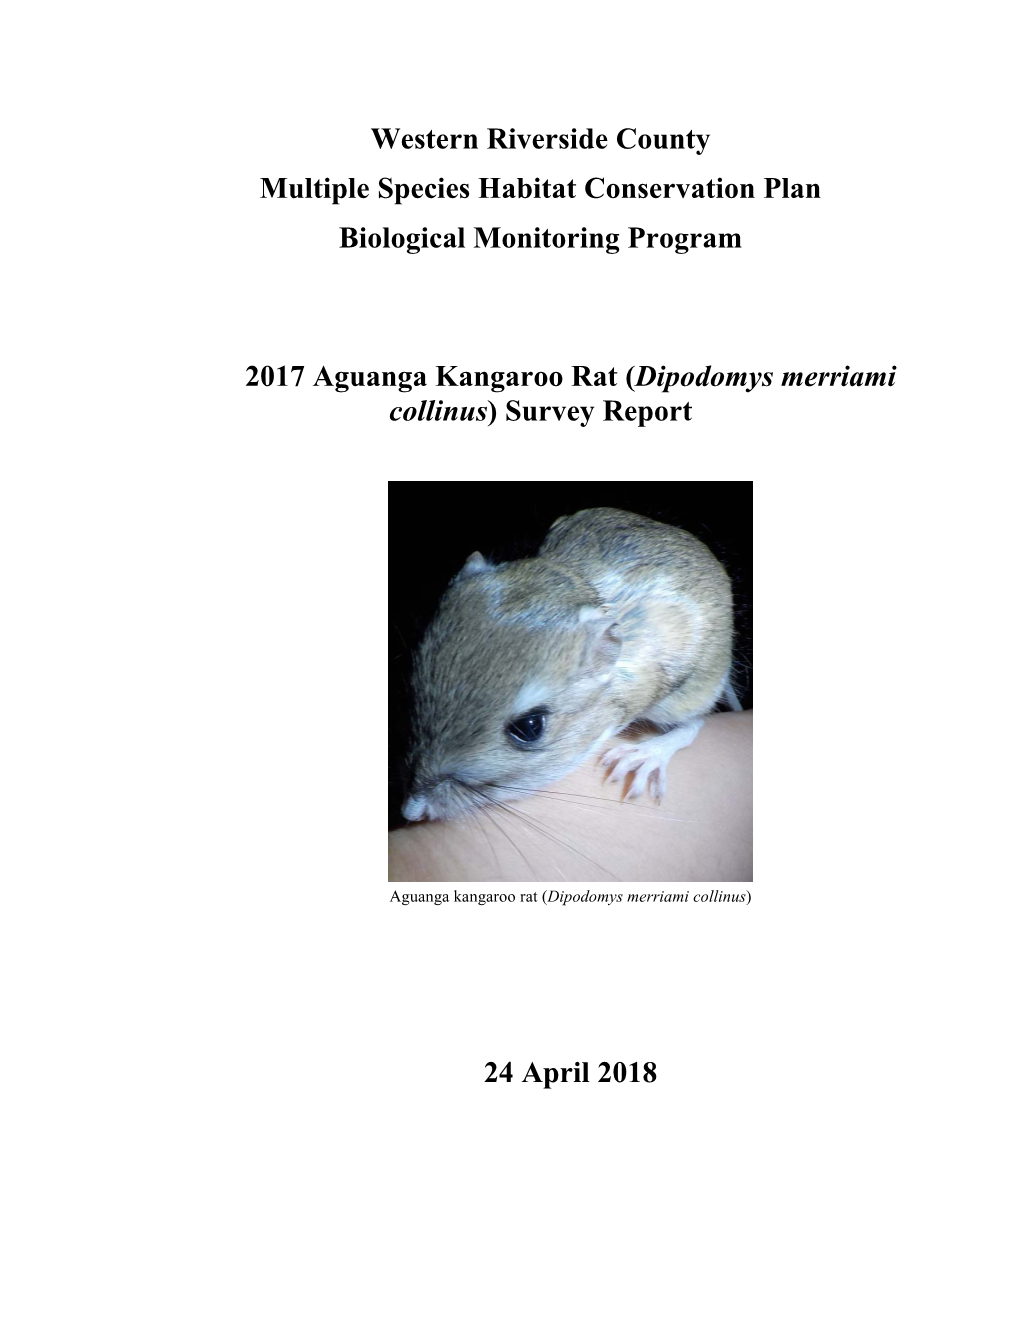 Aguanga Kangaroo Rat Survey Report 2017